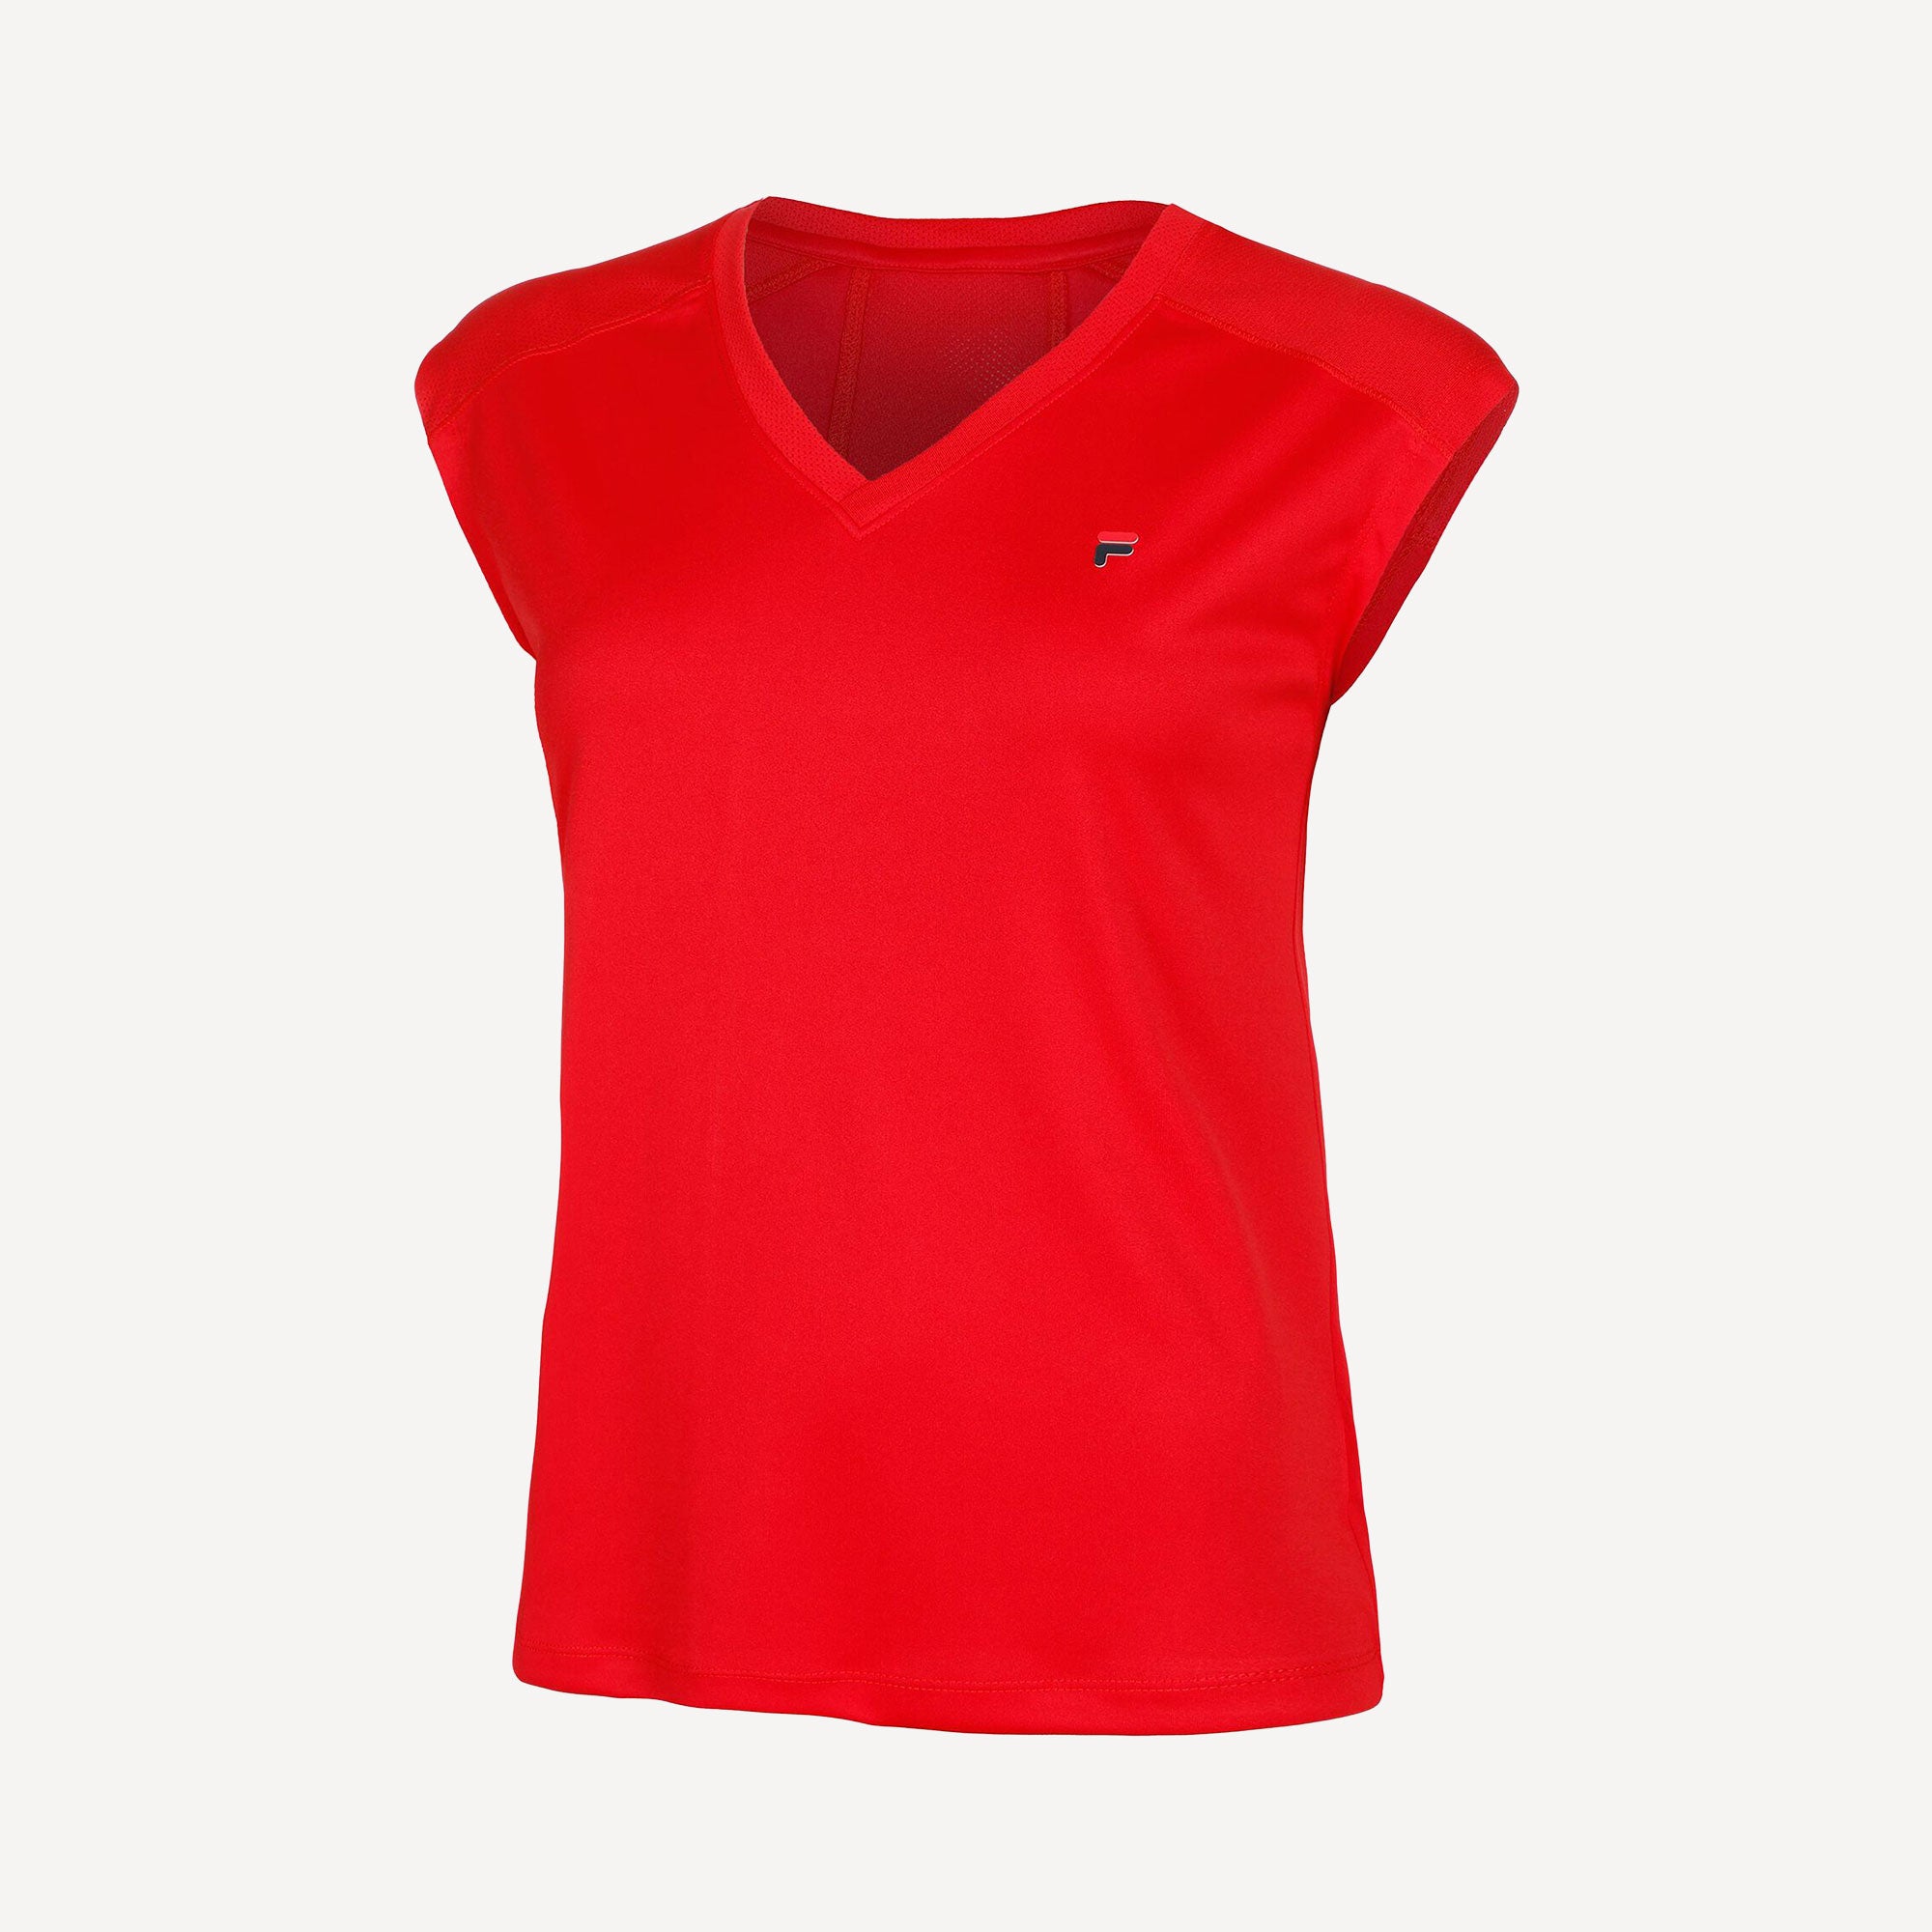 Fila Maia Women's Tennis Shirt - Red (1)